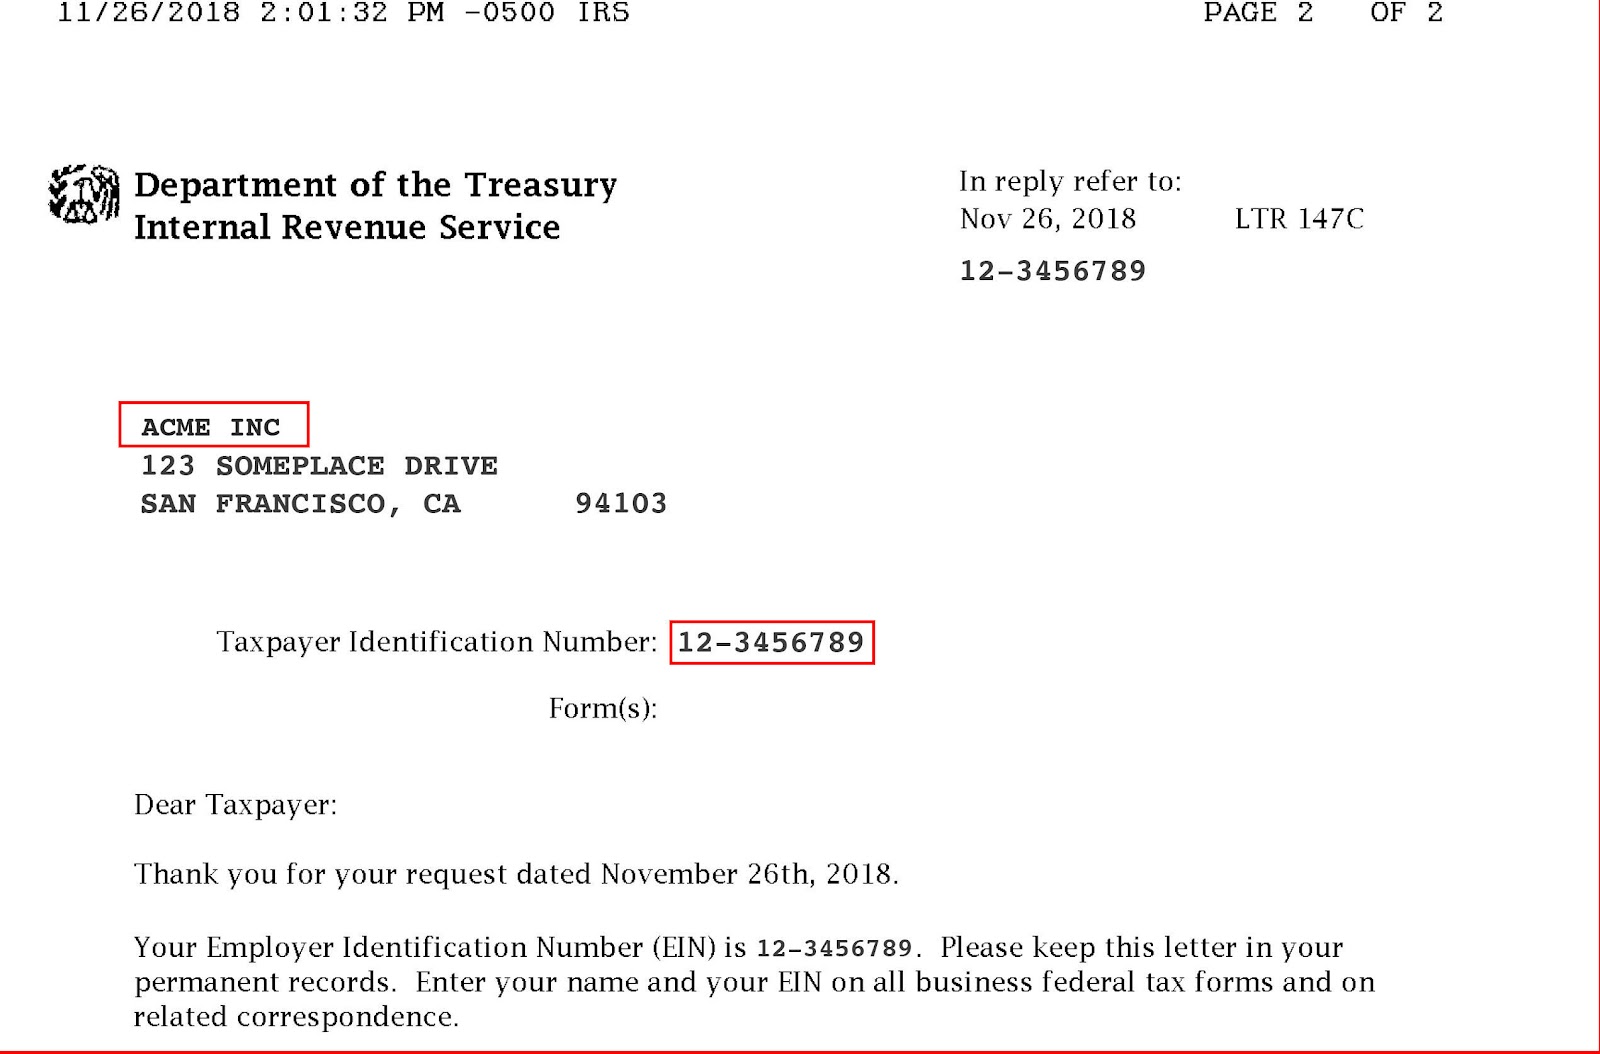 IRS Letter 147C mit hervorgehobenem Firmenname und Steueridentifikationsnummer